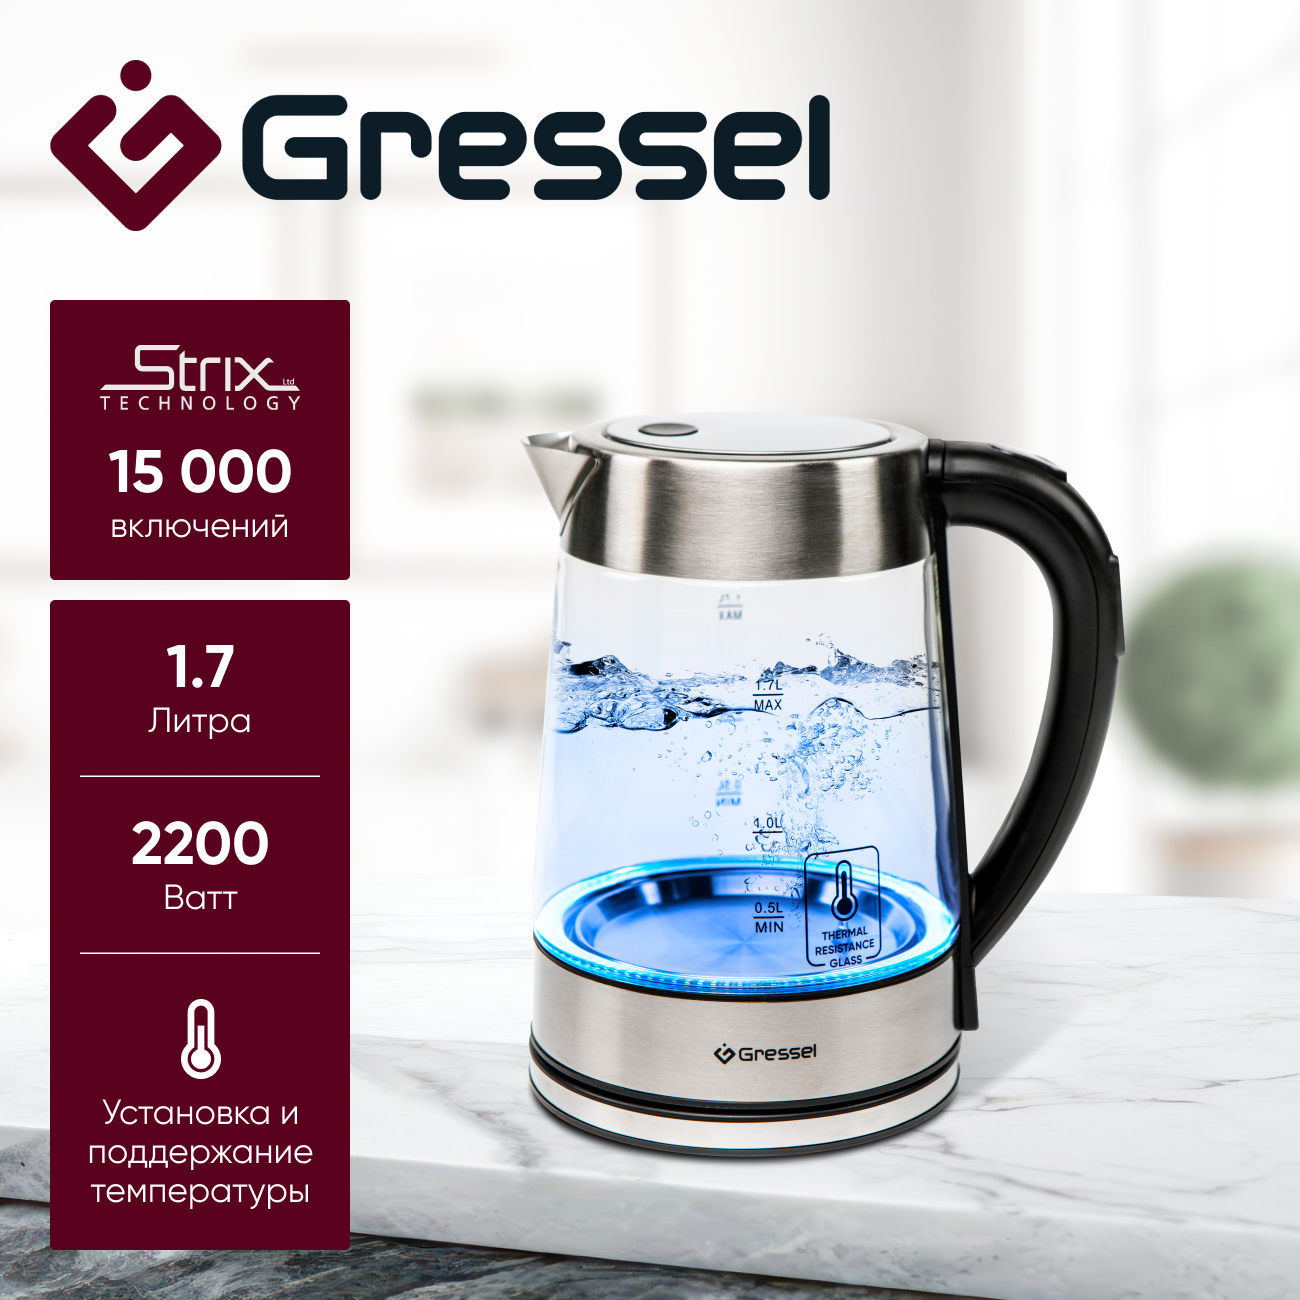 Чайник электрический Gressel GRK-1106 с регулировкой температуры, стеклянный с подсветкой чайник с датчиком температуры xiaomi qcooker white qs 1701 cn